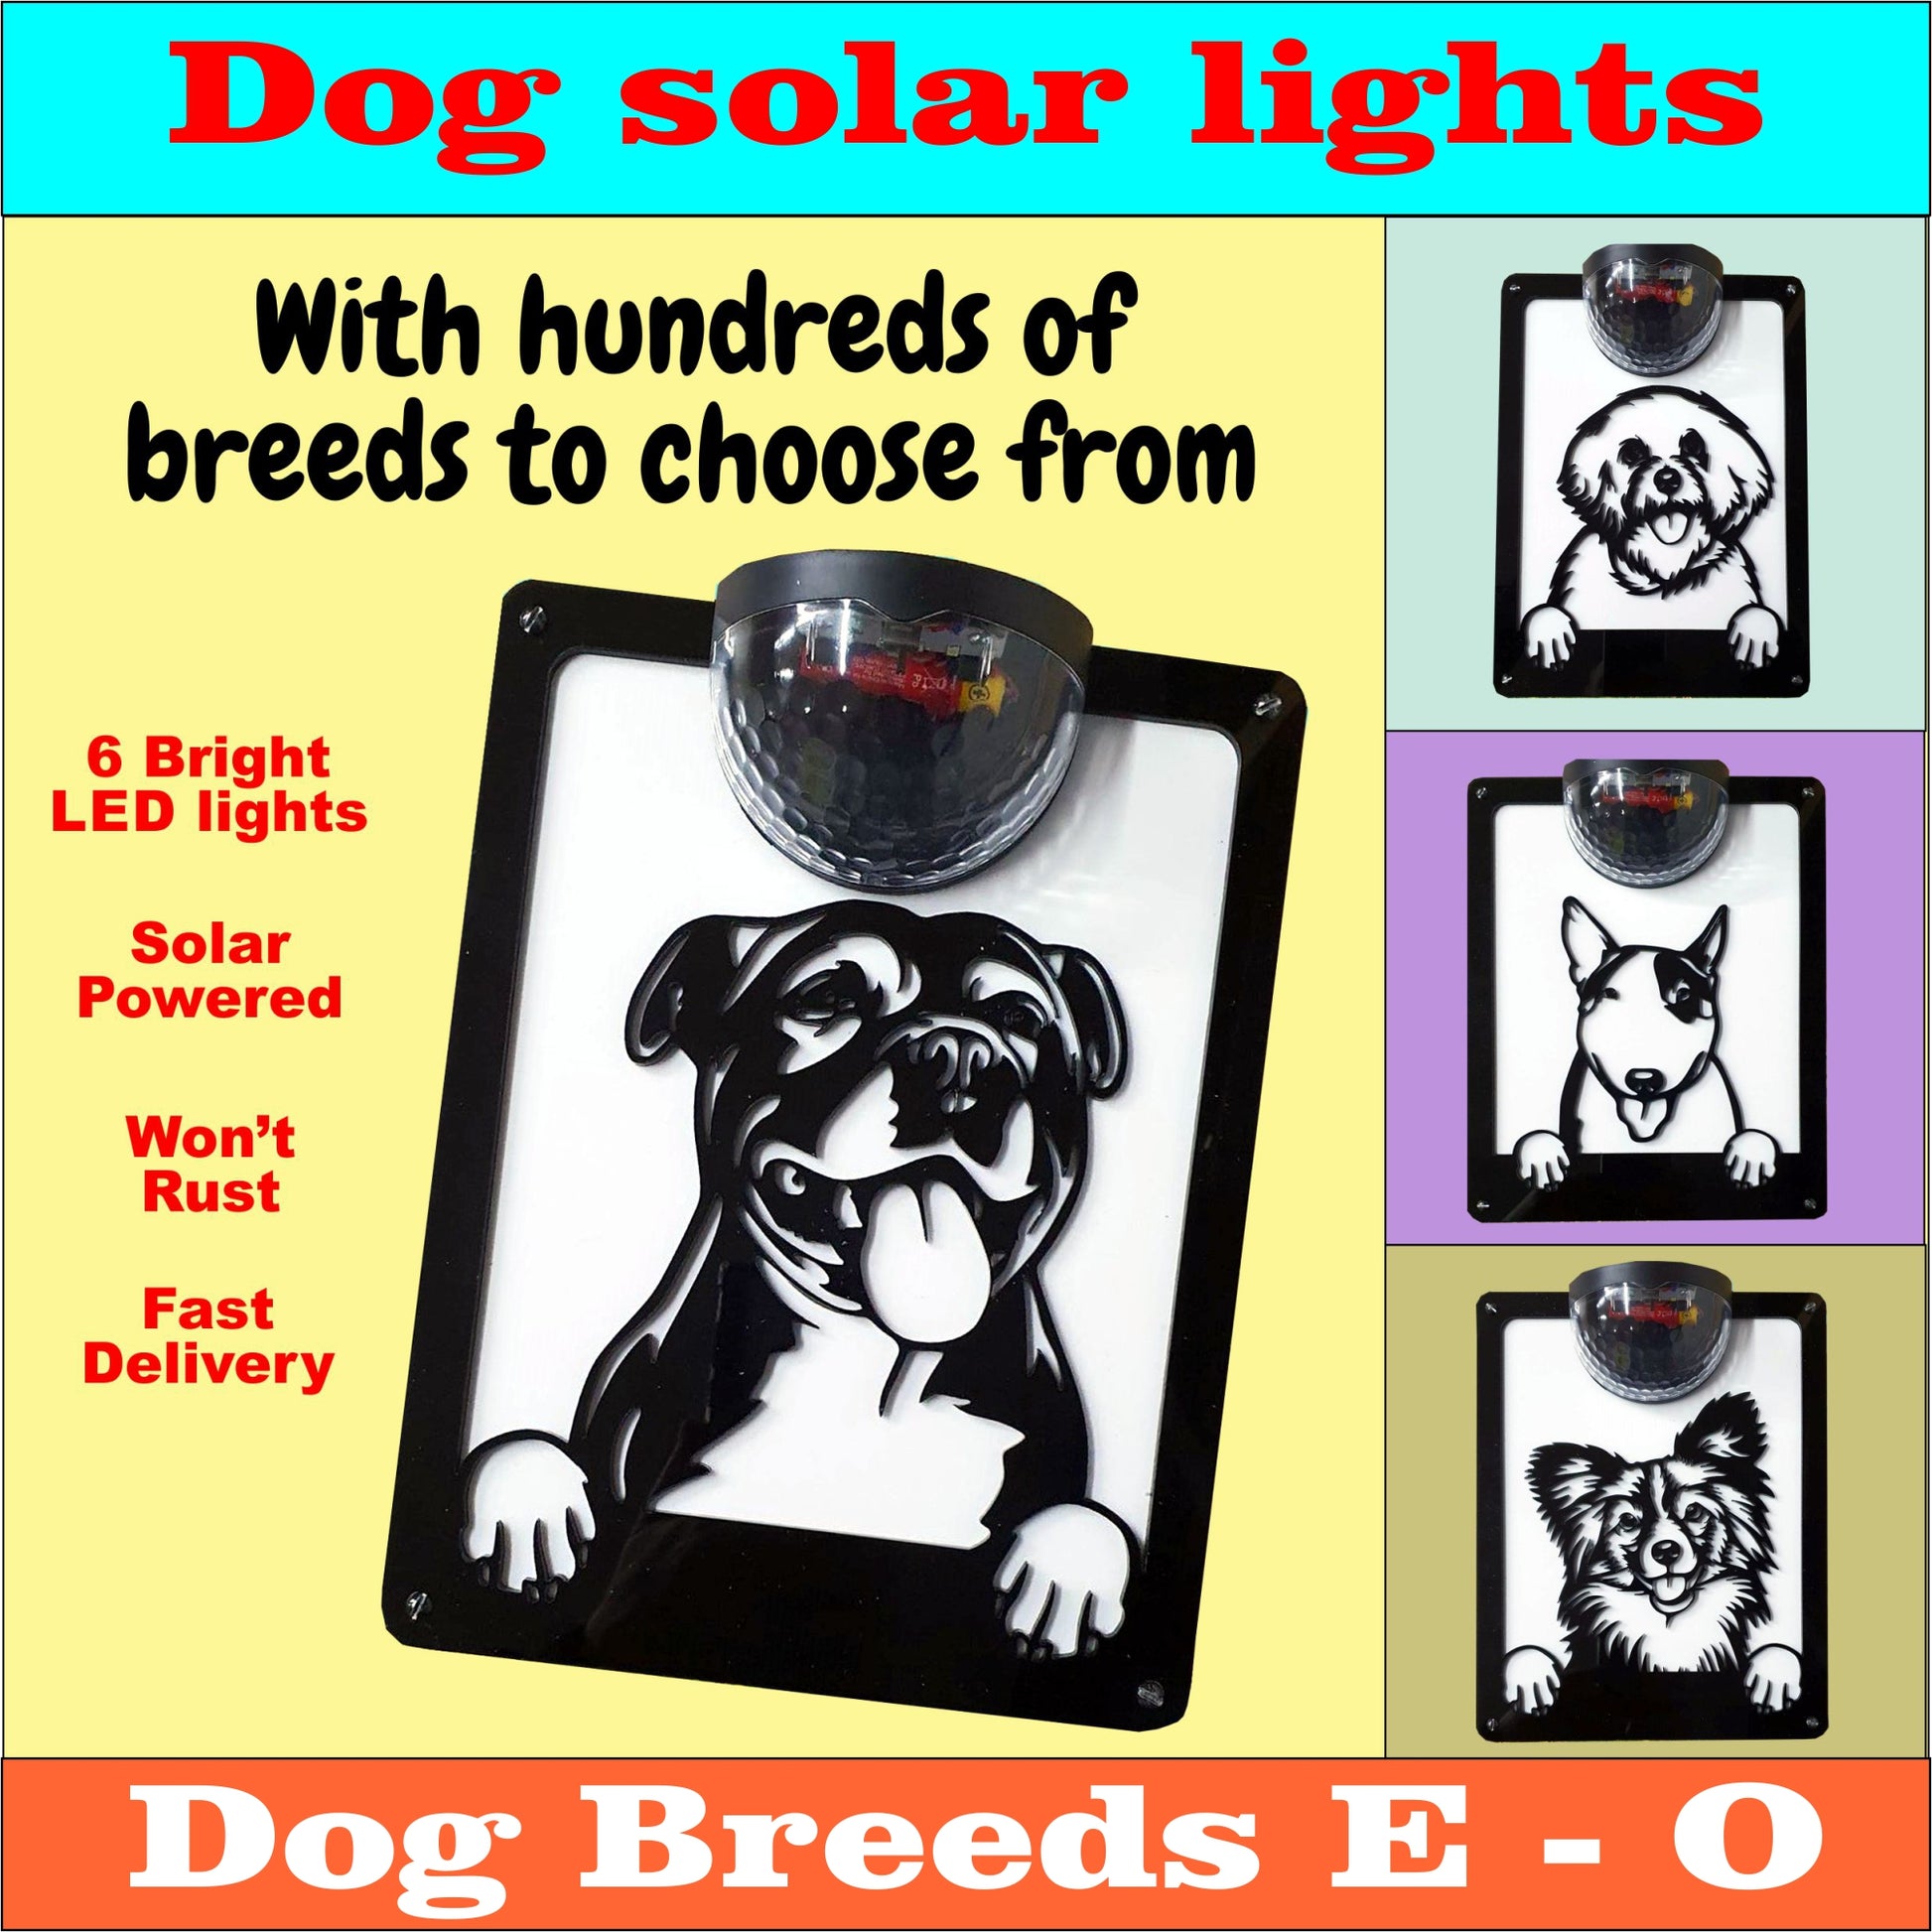 Copy of Dog Memorial Solar Wall plaque (dog breeds E to O) | John Alans